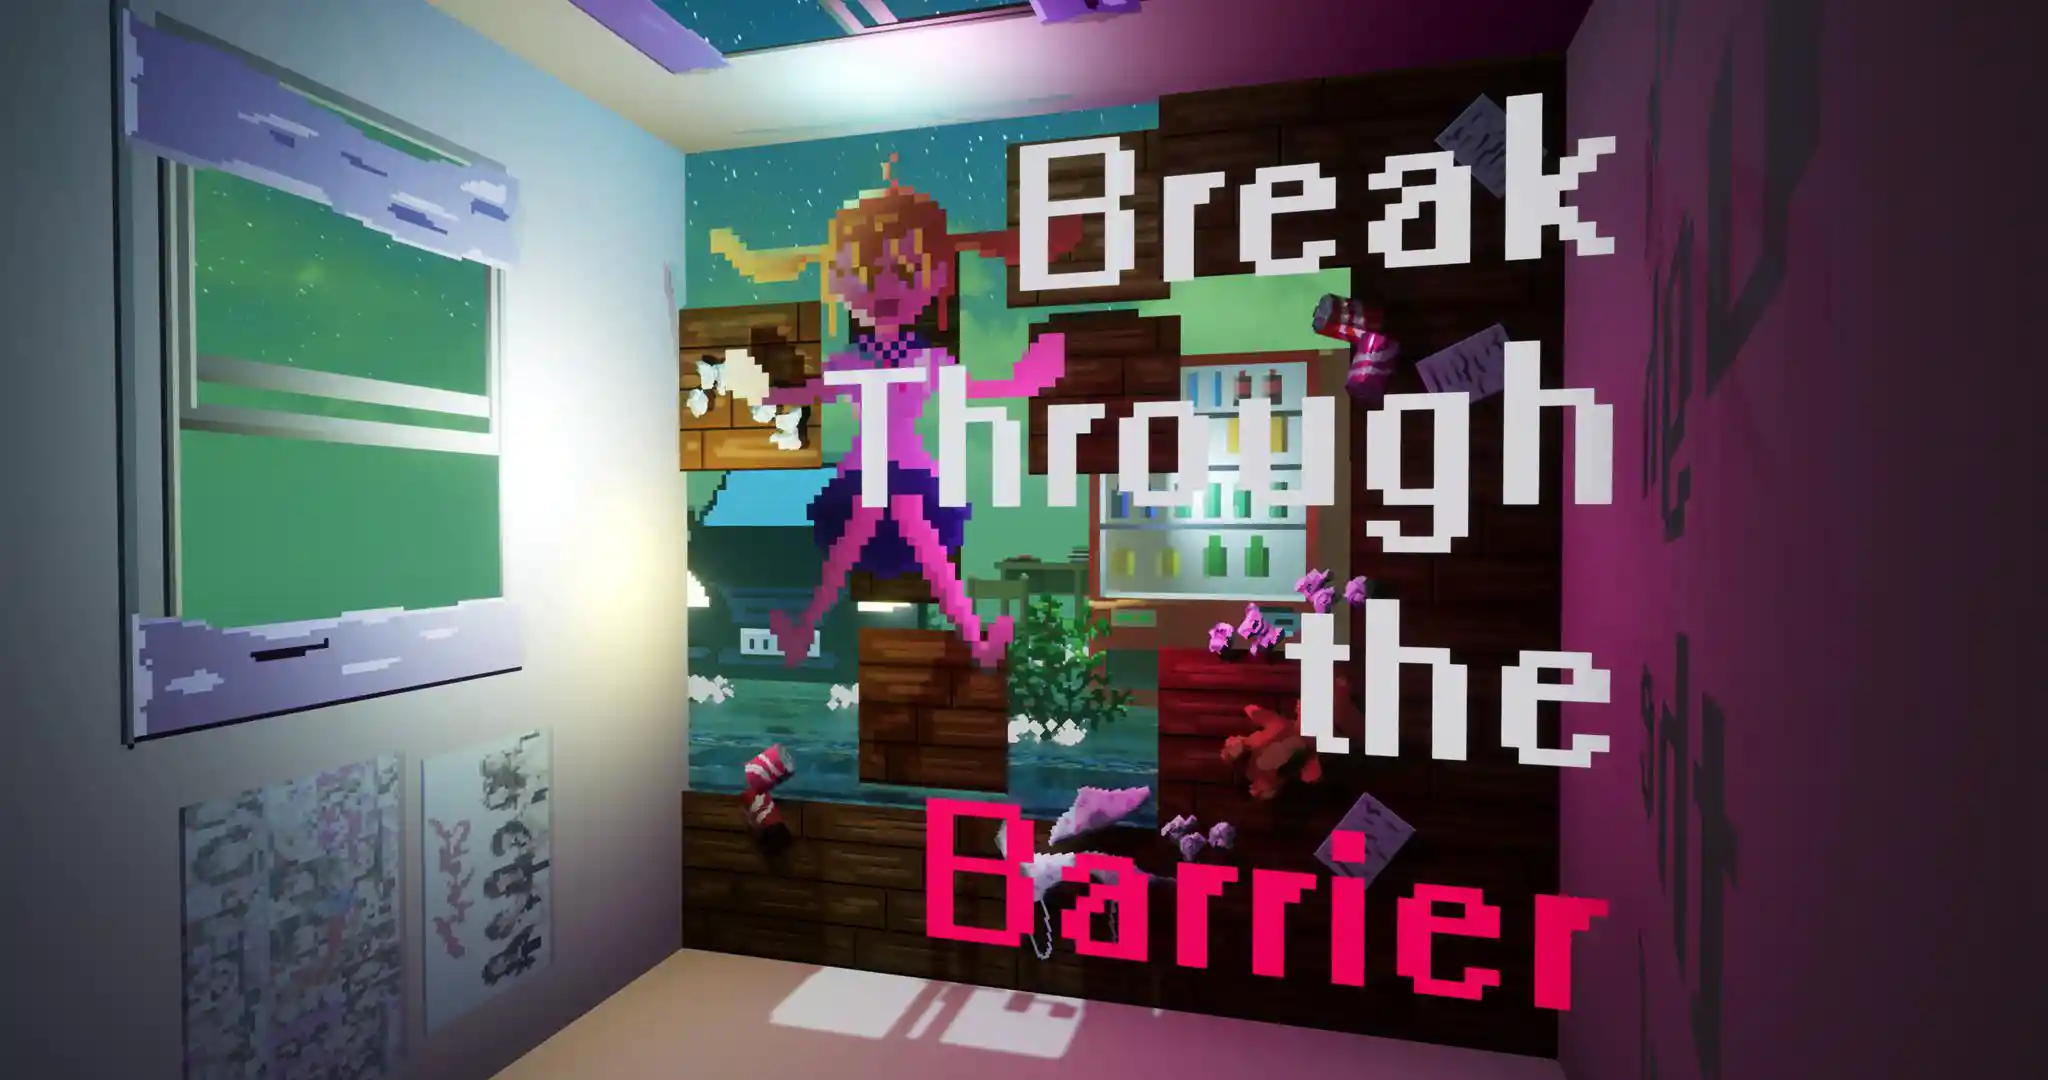 Break Through The Barrier_0.jpg